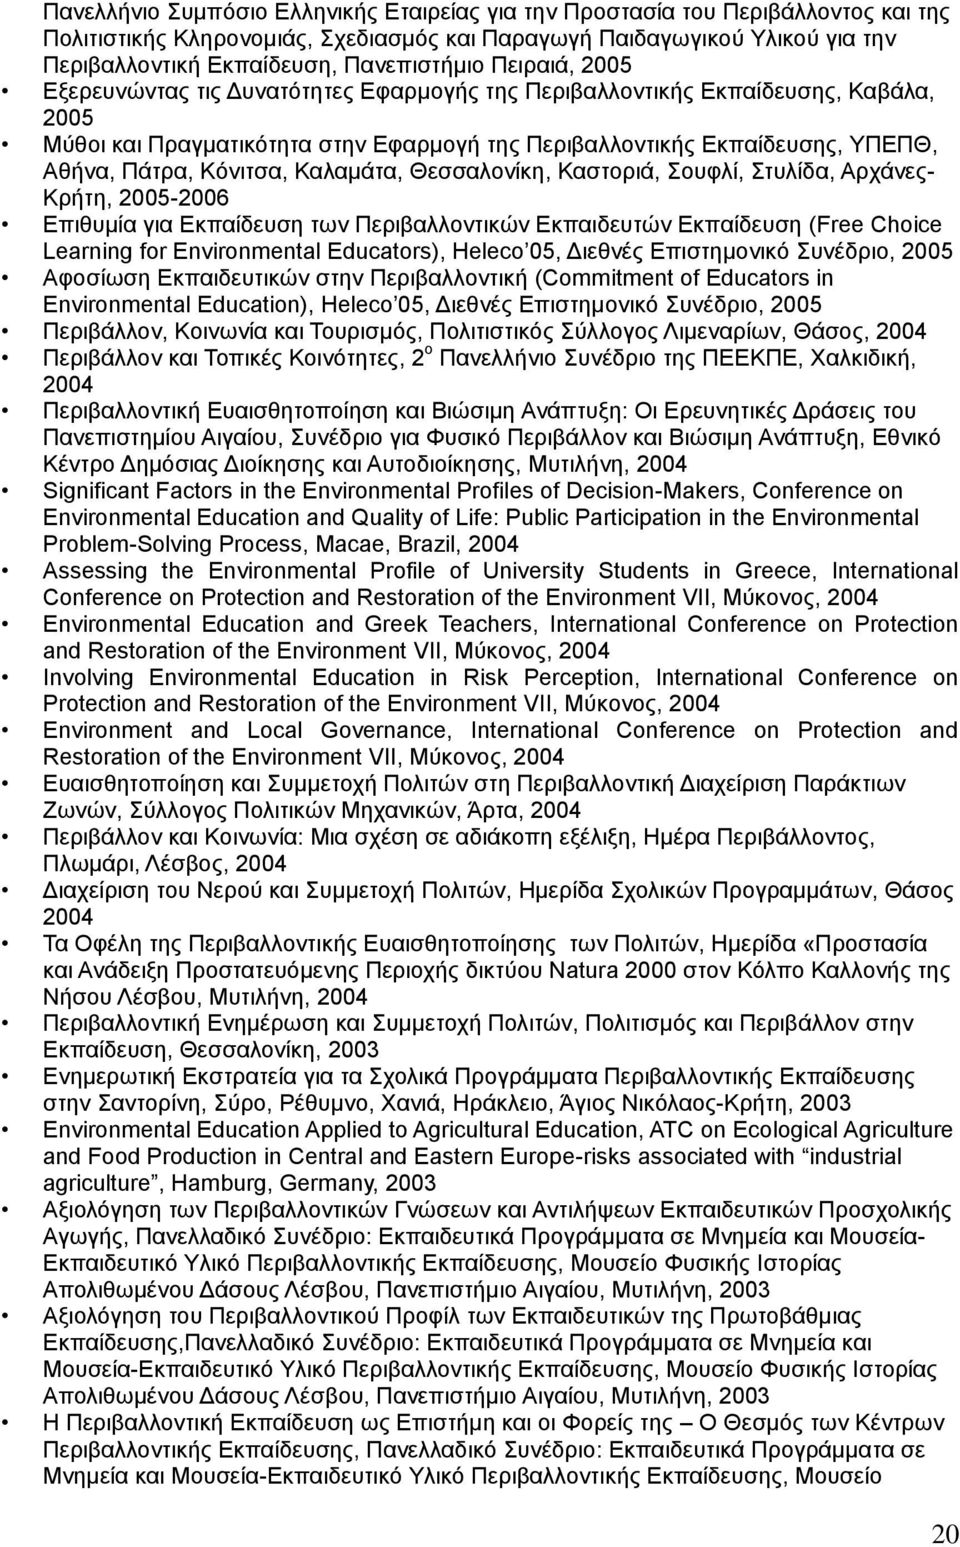 Πάτρα, Κόνιτσα, Καλαμάτα, Θεσσαλονίκη, Καστοριά, Σουφλί, Στυλίδα, Αρχάνες- Κρήτη, 2005-2006 Επιθυμία για Εκπαίδευση των Περιβαλλοντικών Εκπαιδευτών Εκπαίδευση (Free Choice Learning for Environmental